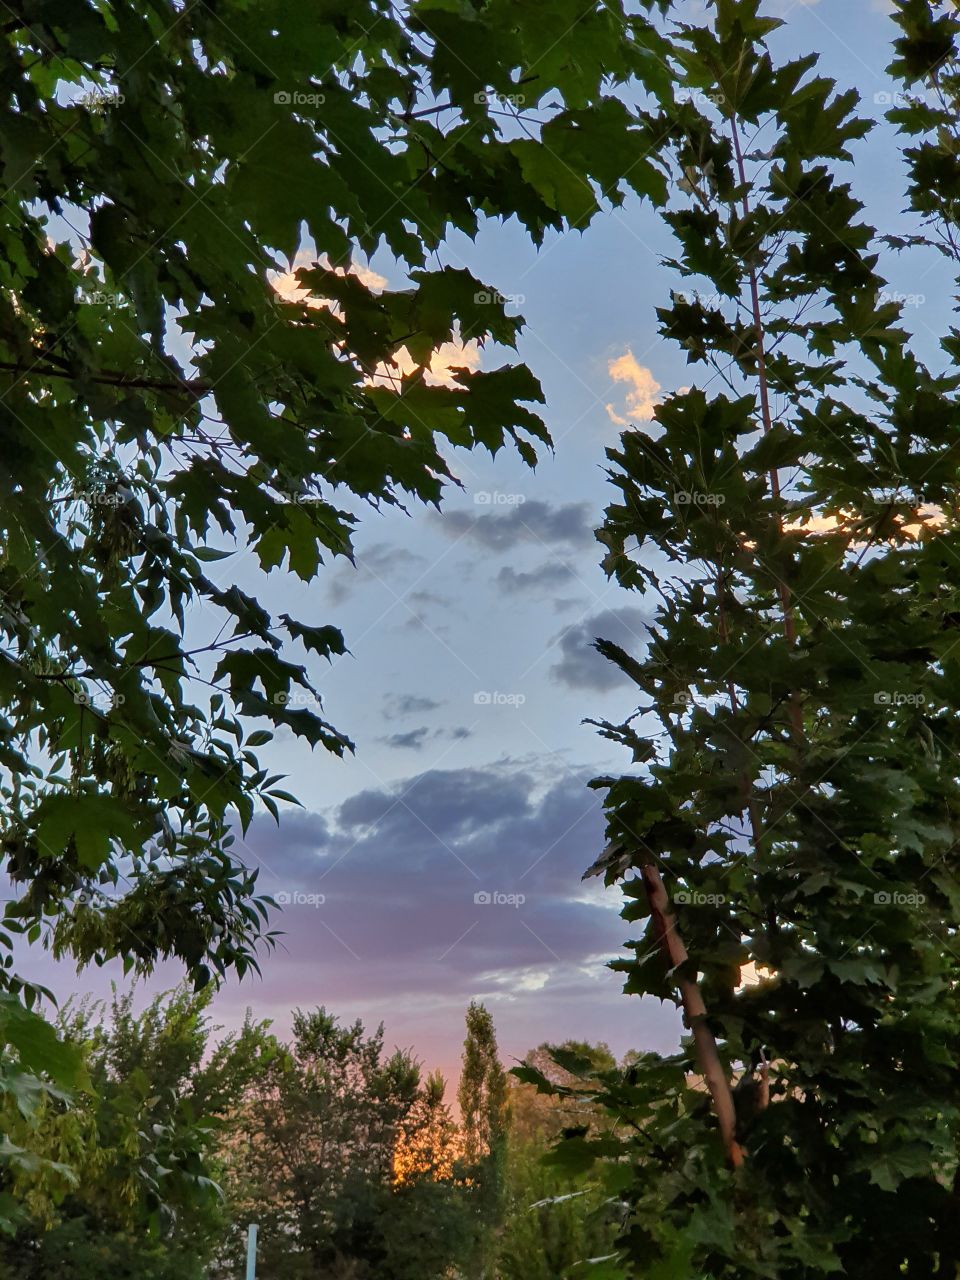 evening sky framed by summer trees